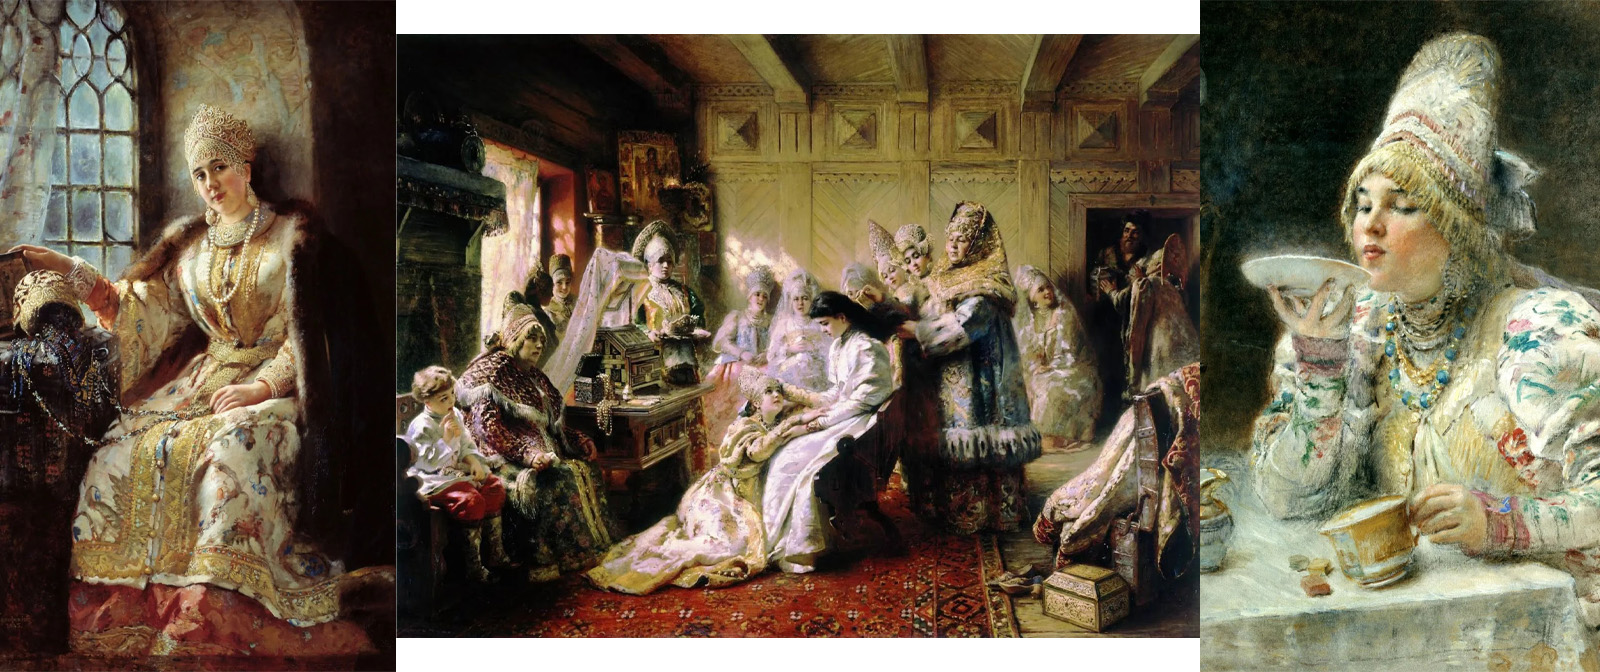 Нескромный обычай, который запечатлел Константин Маковский на картине «Боярский свадебный пир в XVII веке»